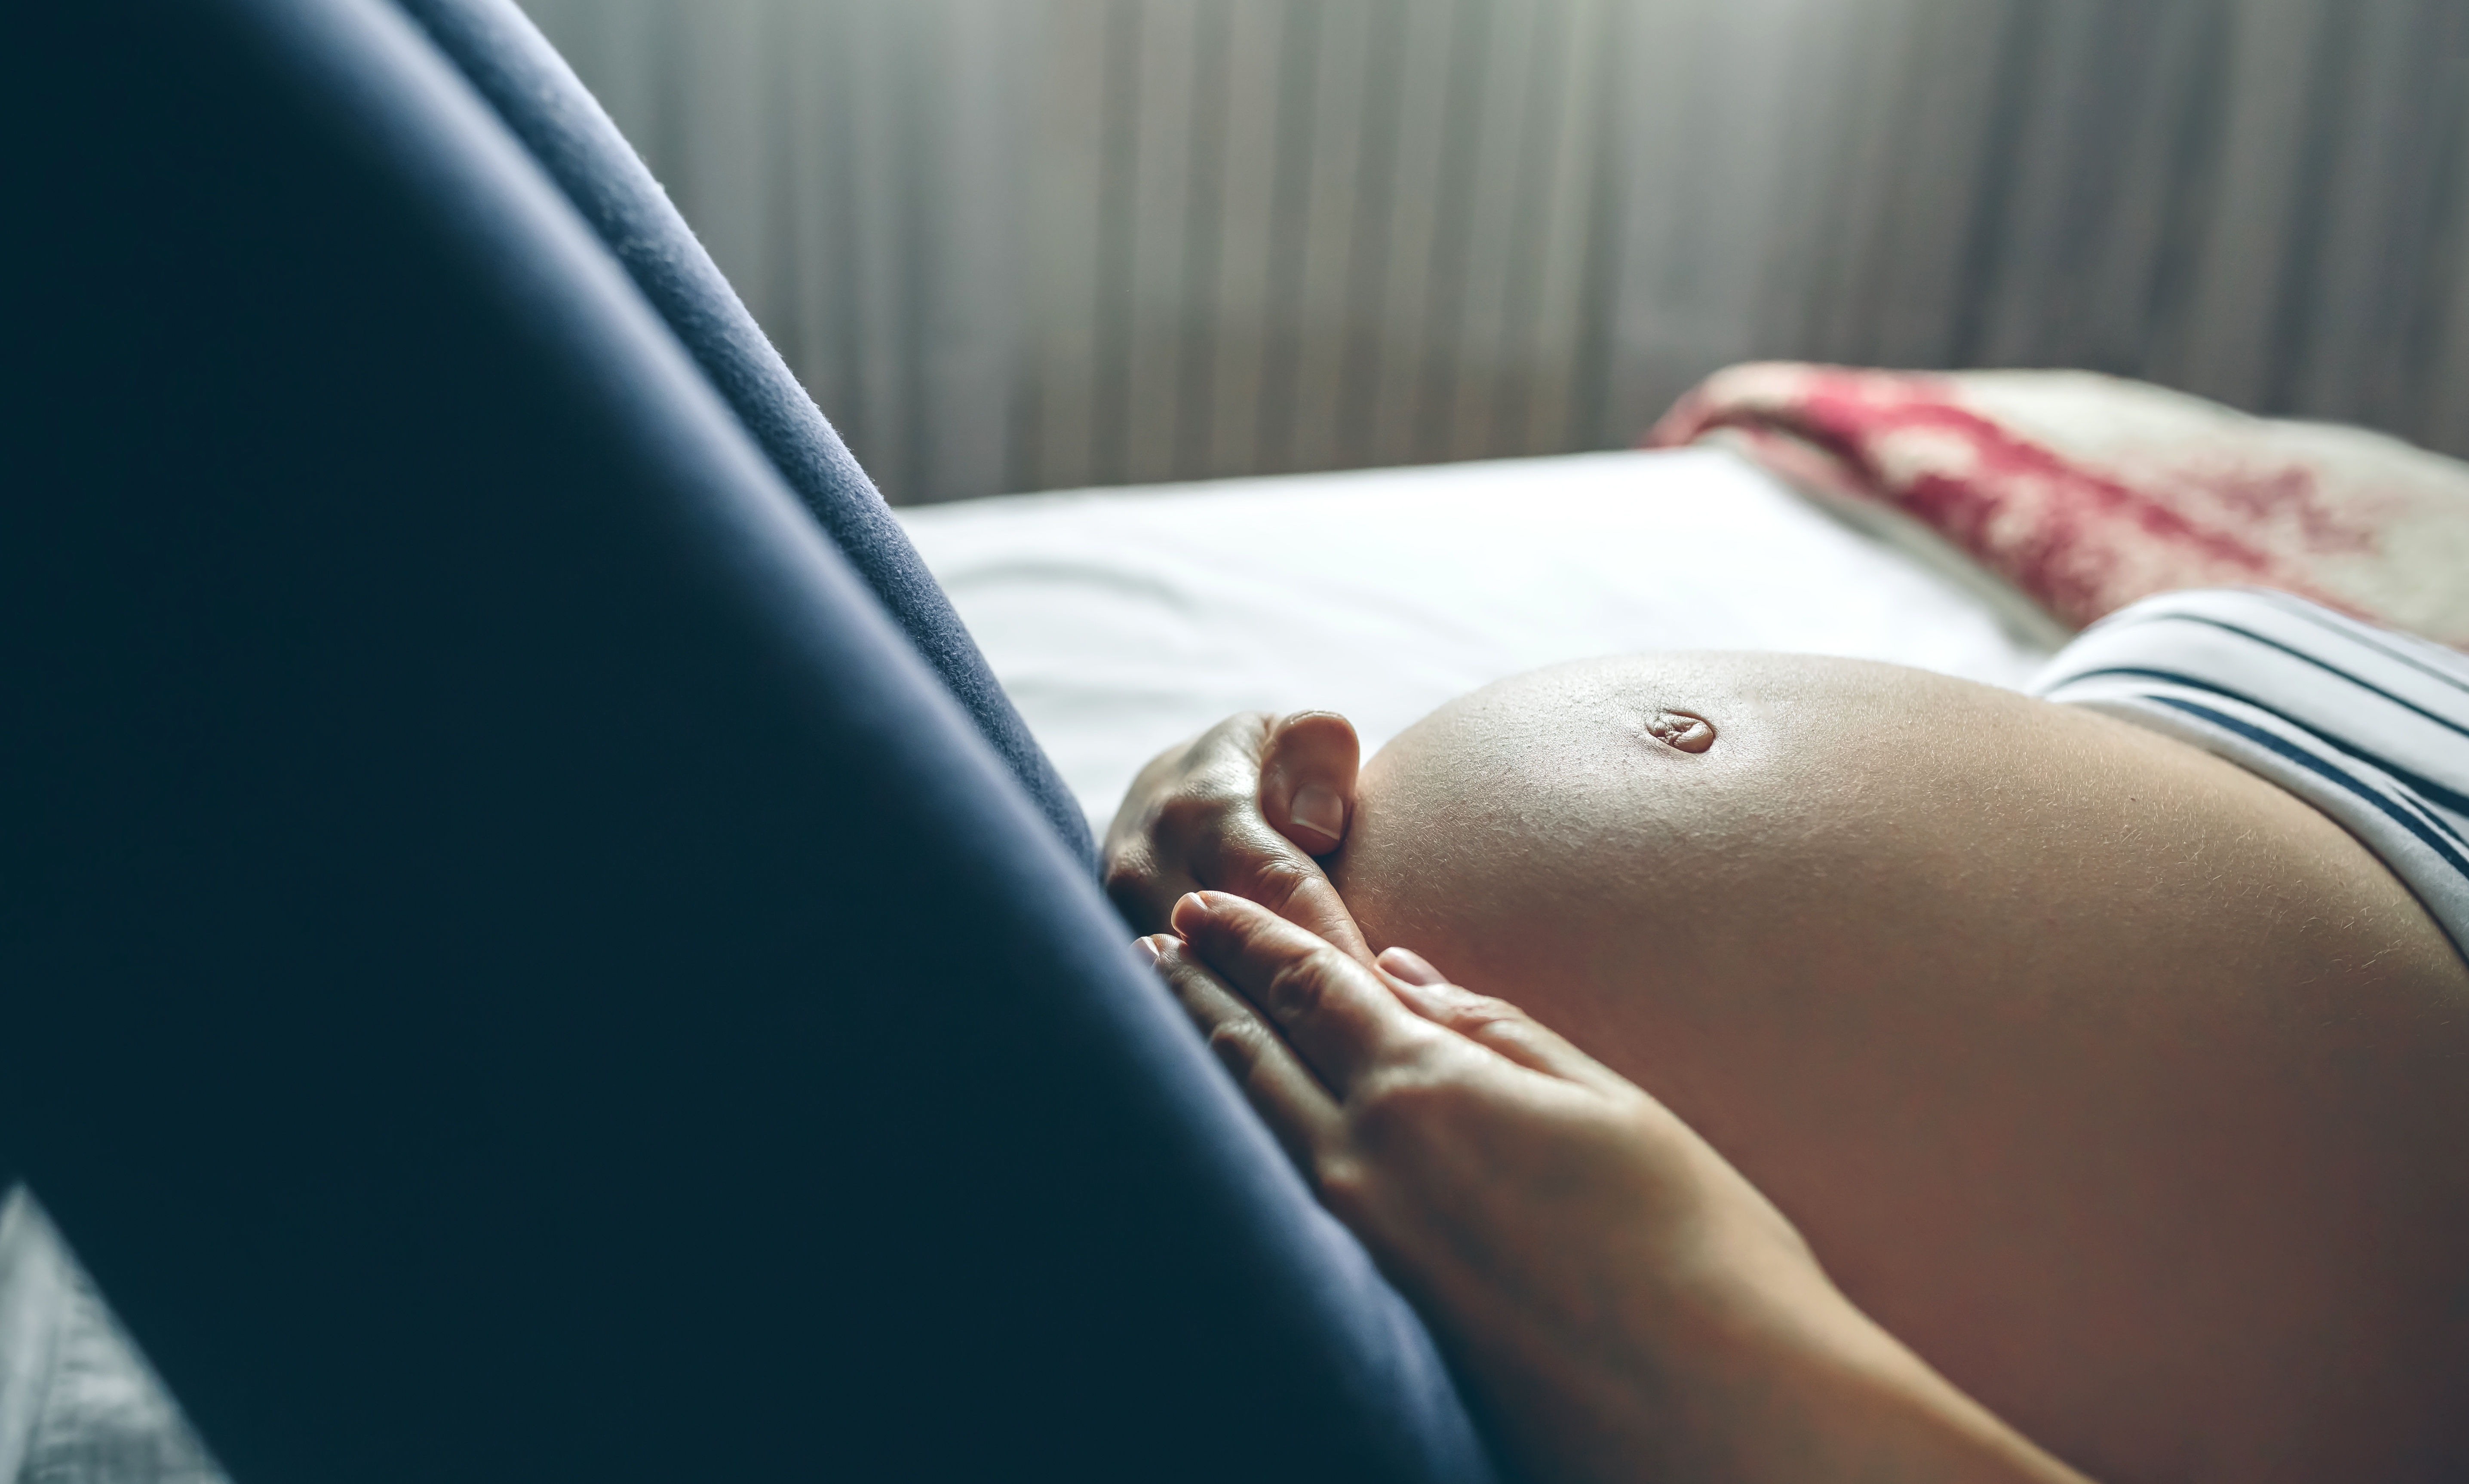 Foetal Movement - When do babies start kicking?